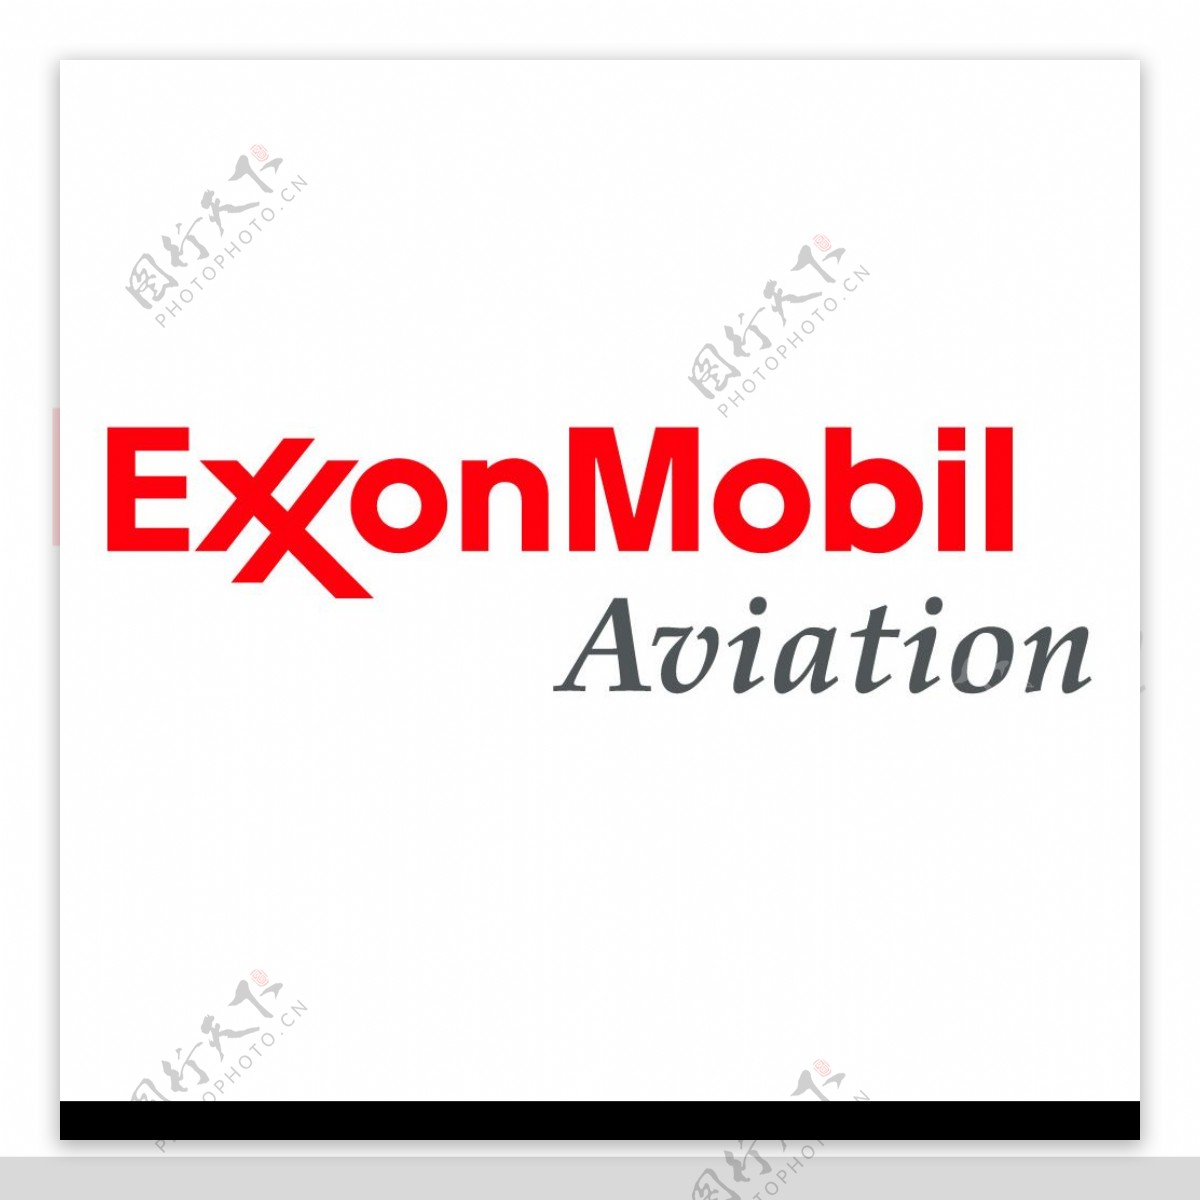 ExxonMobil埃克森美孚图片